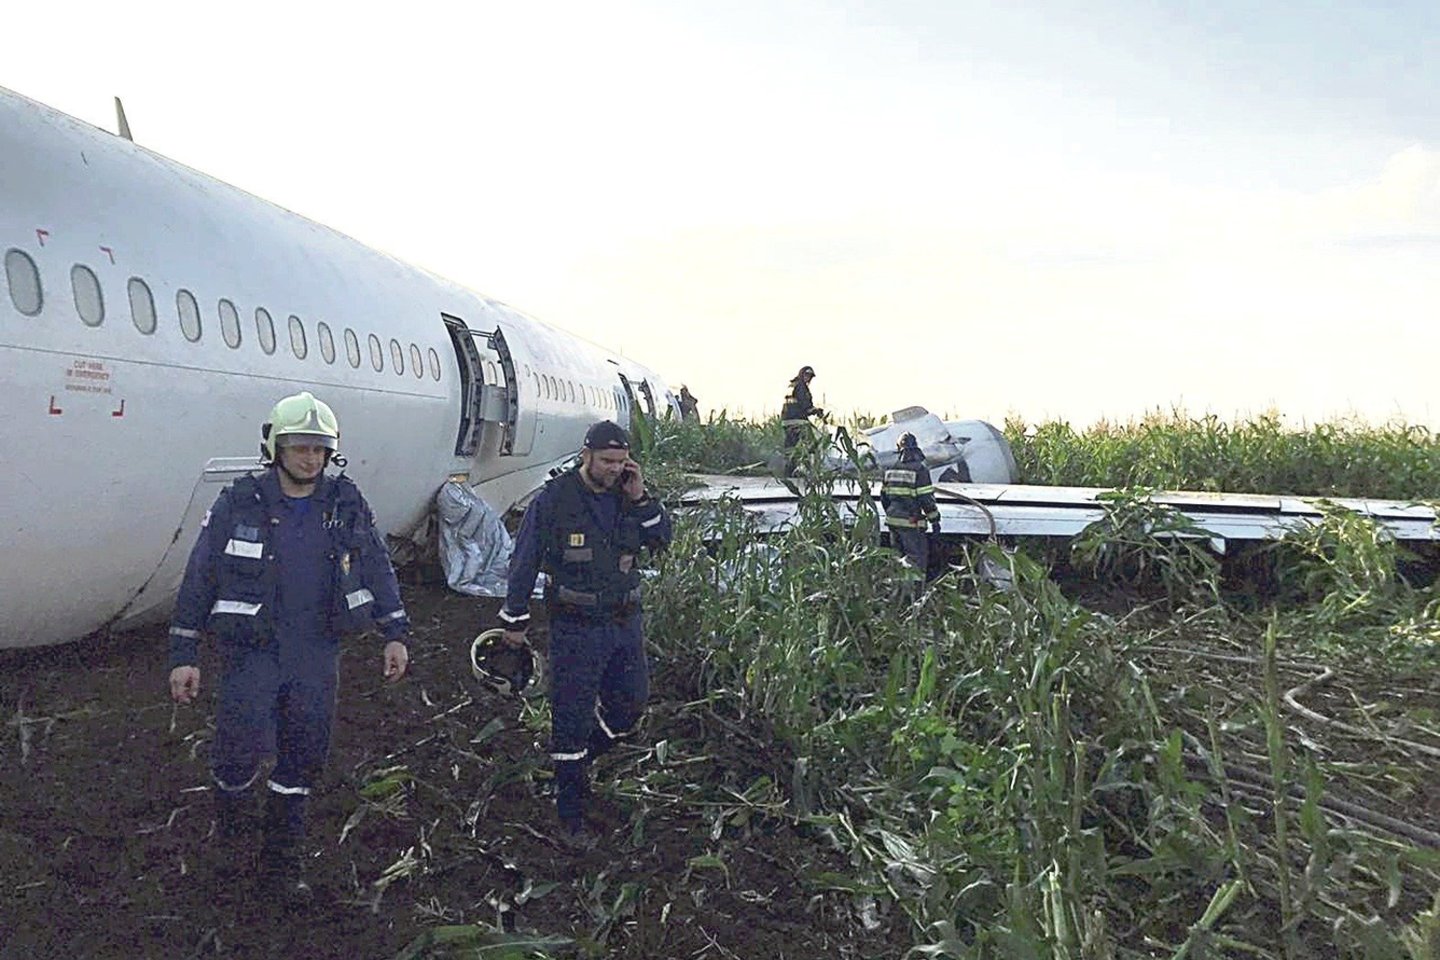 Avariniu būdu Pamaskvės kukurūzų lauke nusileidęs oro linijų „Uralskie avialinii“ laineris „Airbus-321“ neremontuotinas, todėl bus supjaustytas ir utilizuotas, trečiadienį pareiškė bendrovės generalinis direktorius Sergejus Skuratovas.